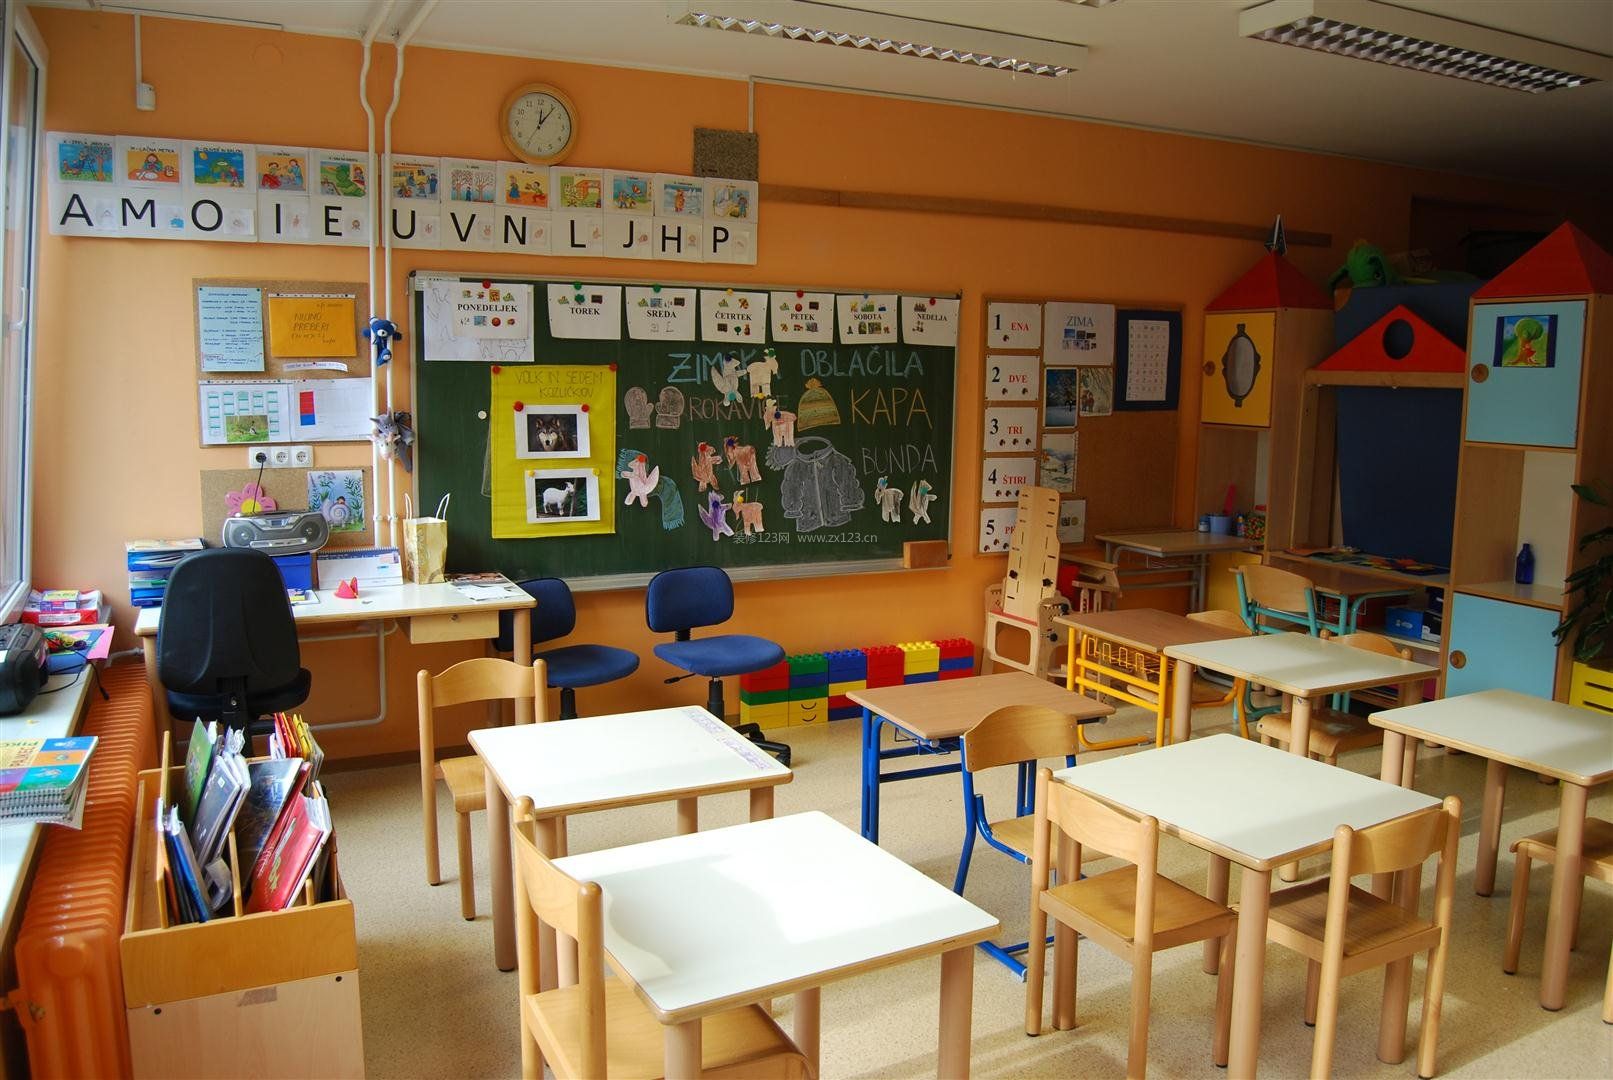 幼儿园室内教室布置装修效果图片